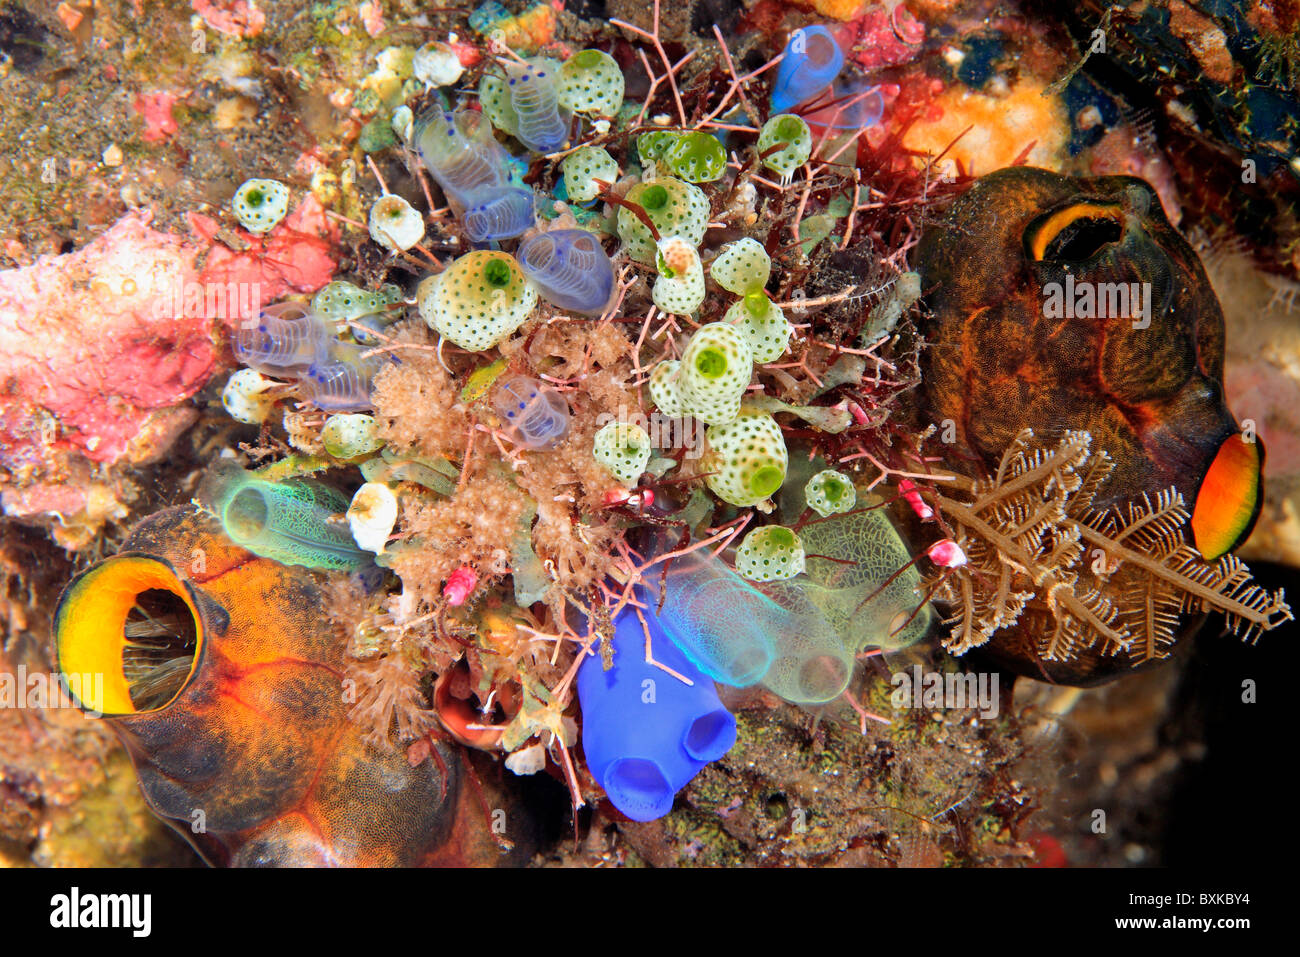 Gruppo di brillanti e colori del mare schizza, tunicati o ascidie. Foto Stock